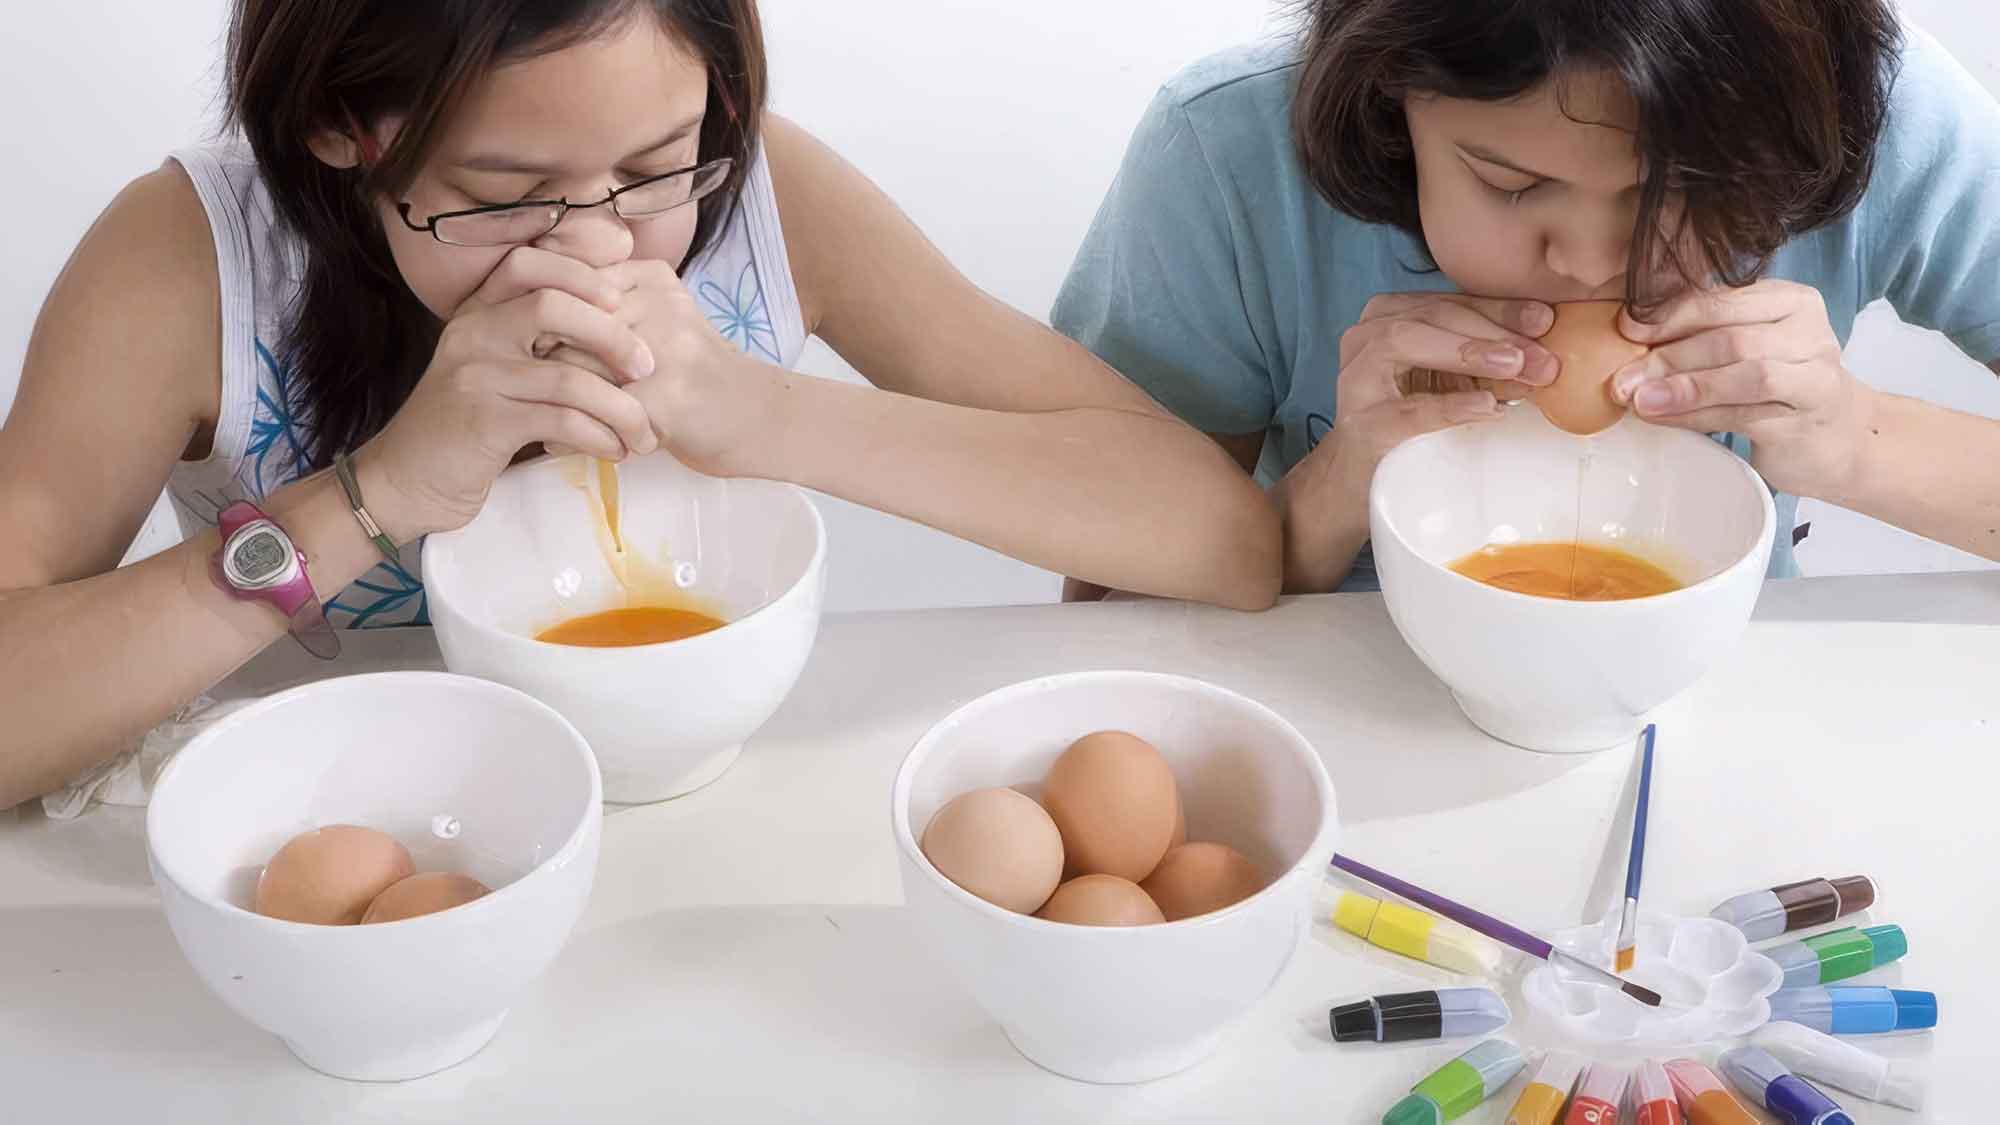 Strohhalm oder Blasebalg: Hilfsmittel zum Eier ausblasen schützen vor Lebensmittelinfektionen